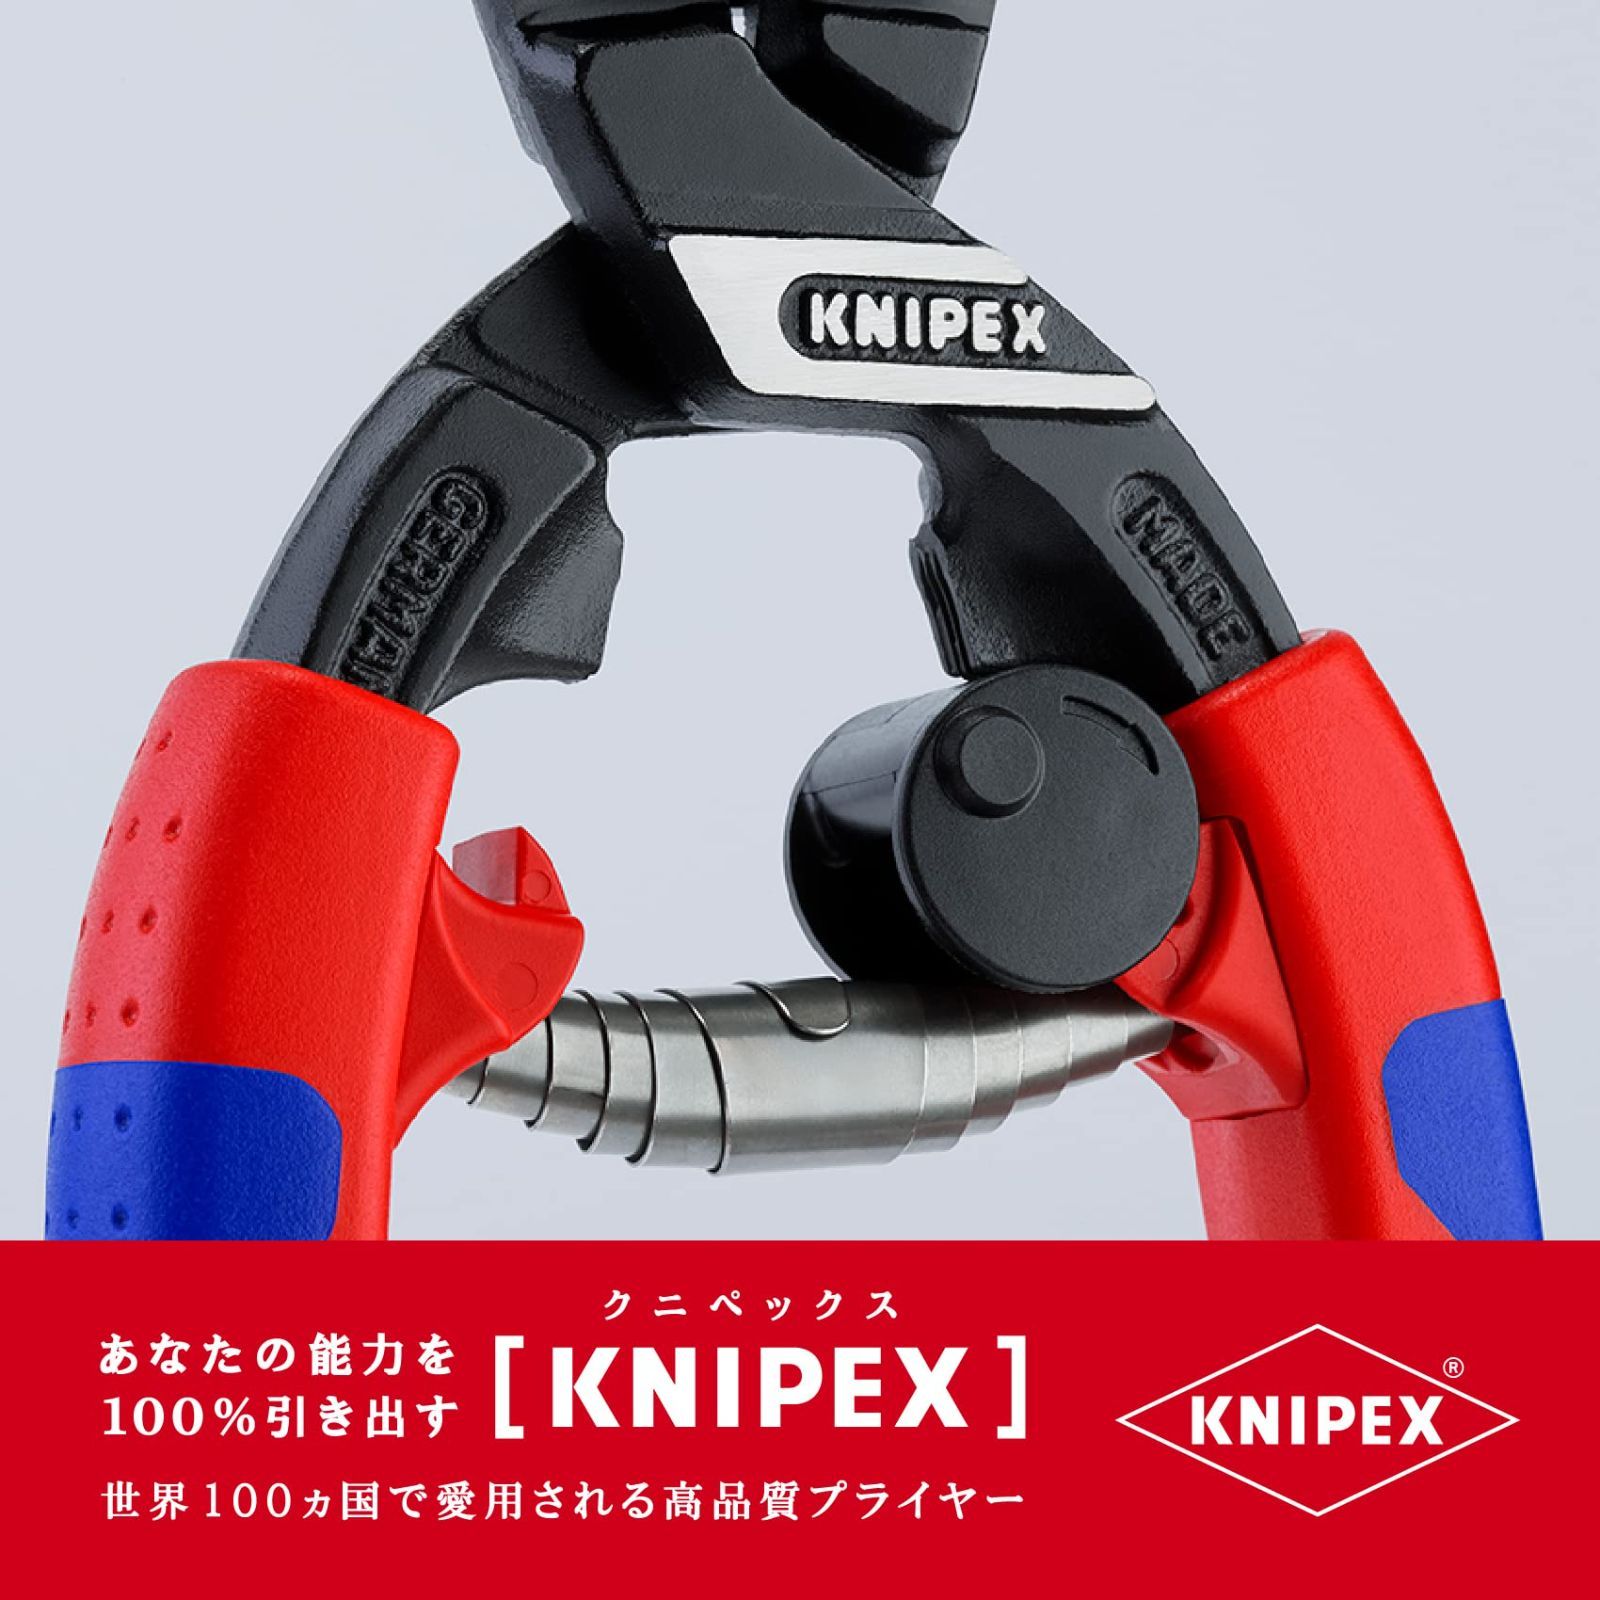 激安格安割引情報満載 KNIPEX クニペックス ミニクリッパー 160mm